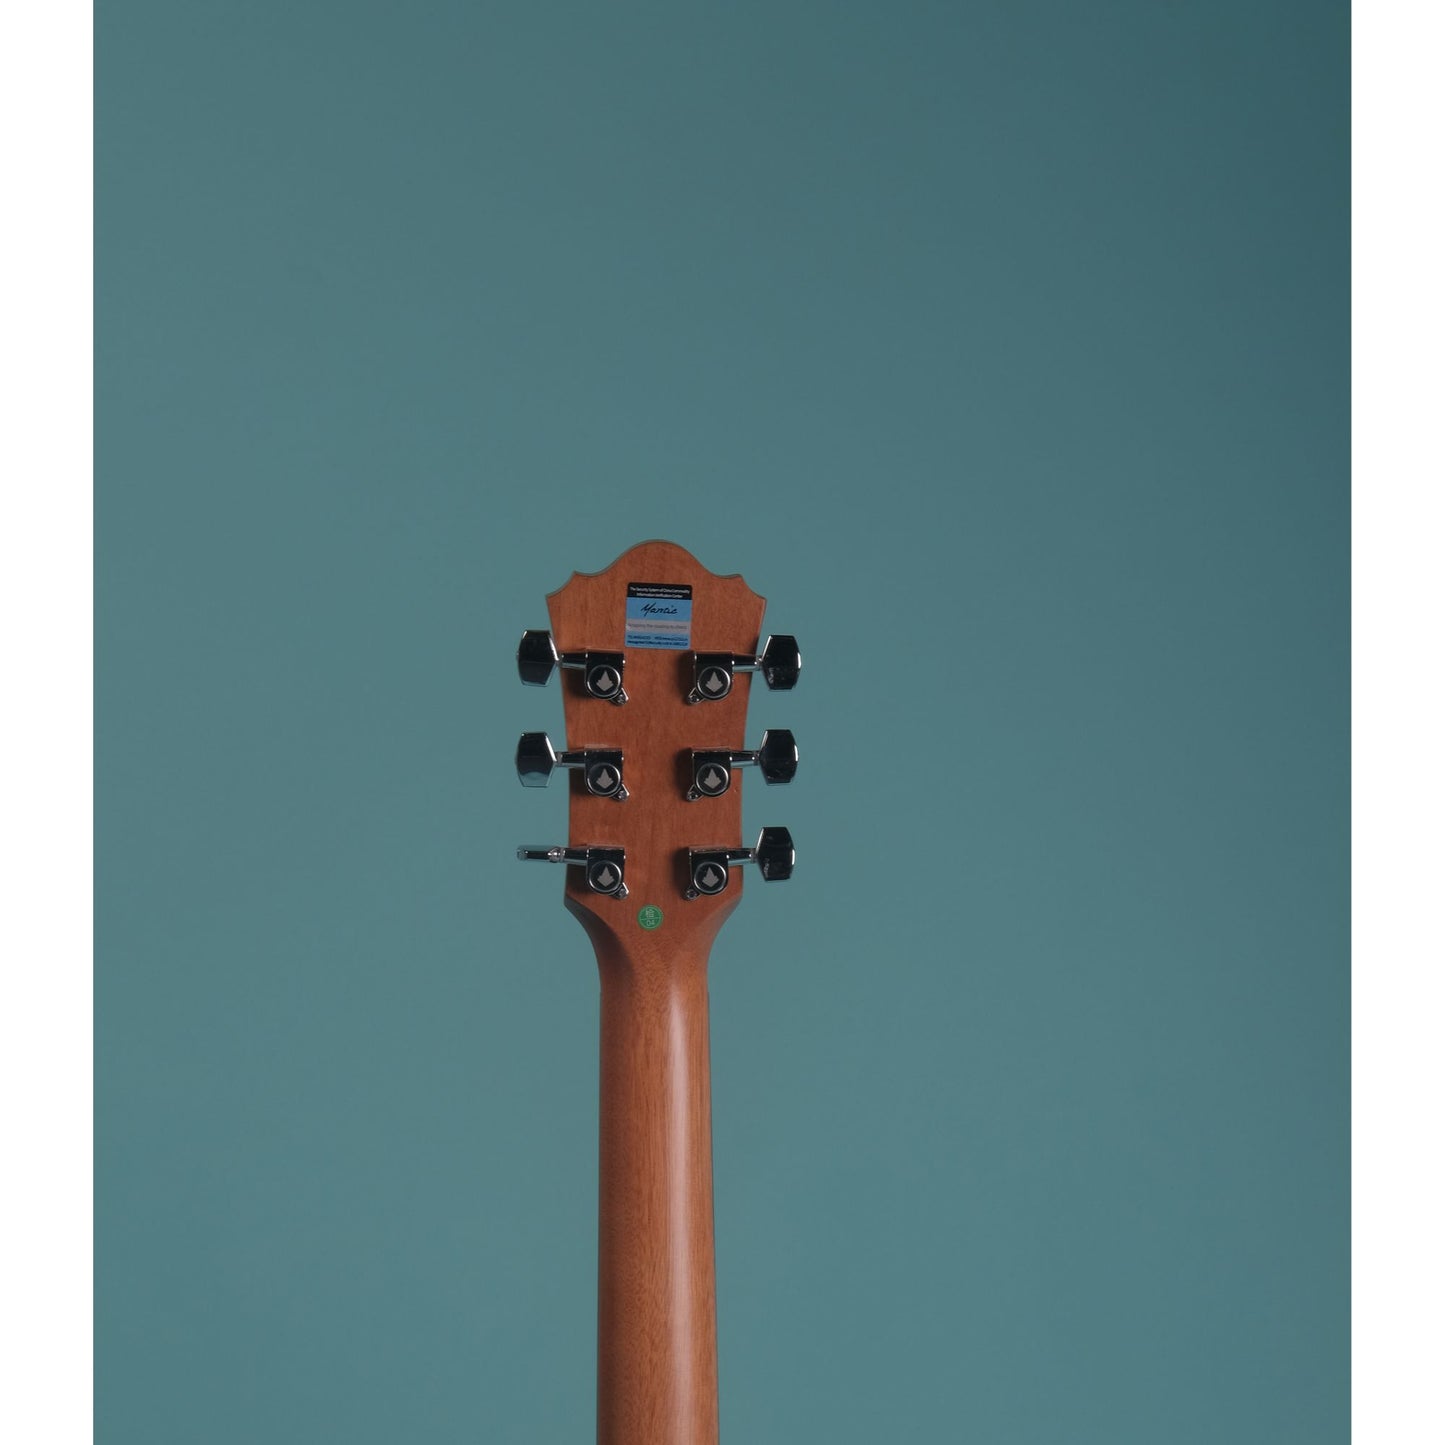 Mantic OM1 -E Semi-Acoustic Guitar with Fishman Pickup - Natural